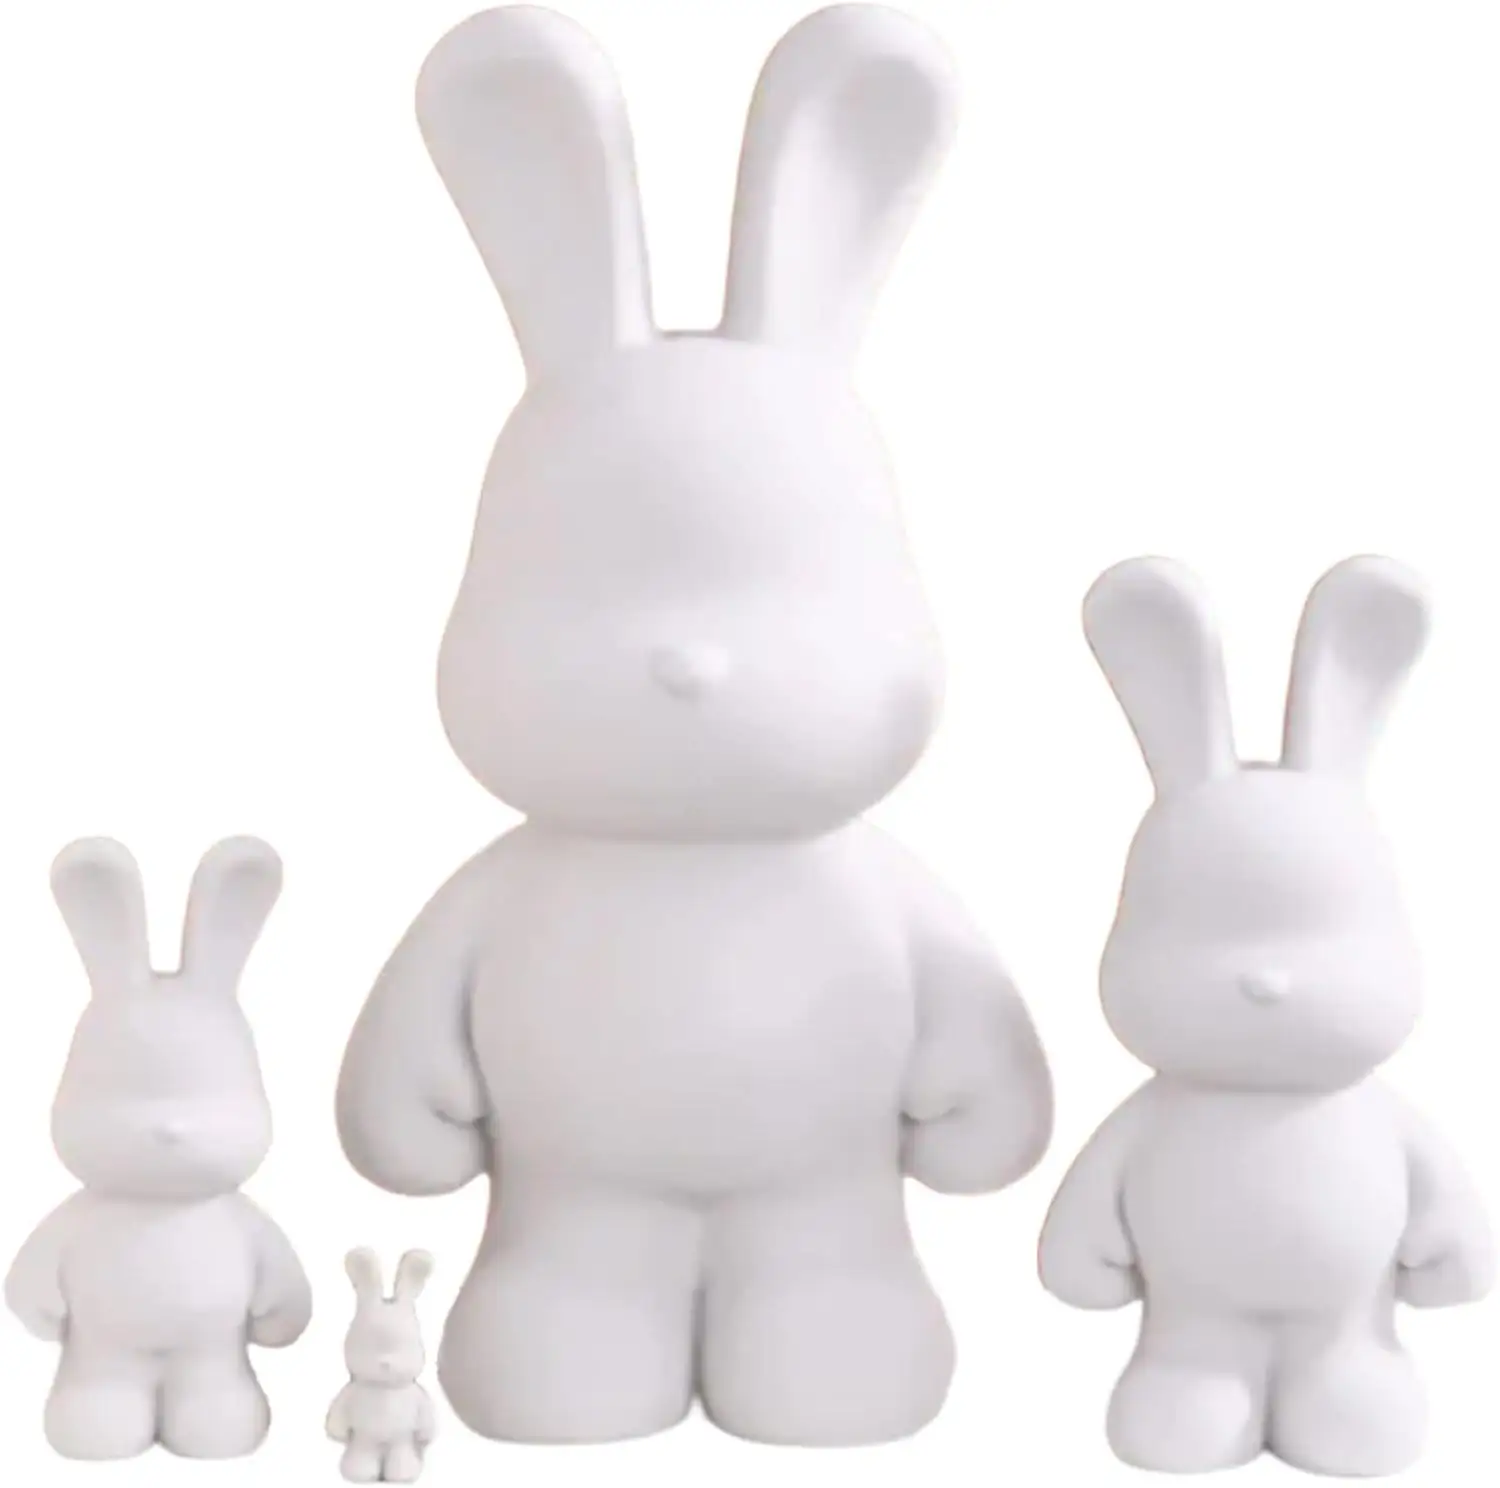 Benutzer definierte Diy Fluid Rabbit Figuren Malerei Kit Sparschwein Kreative Home Decorations Spielzeug Geschenk für Geburtstag Valentinstag